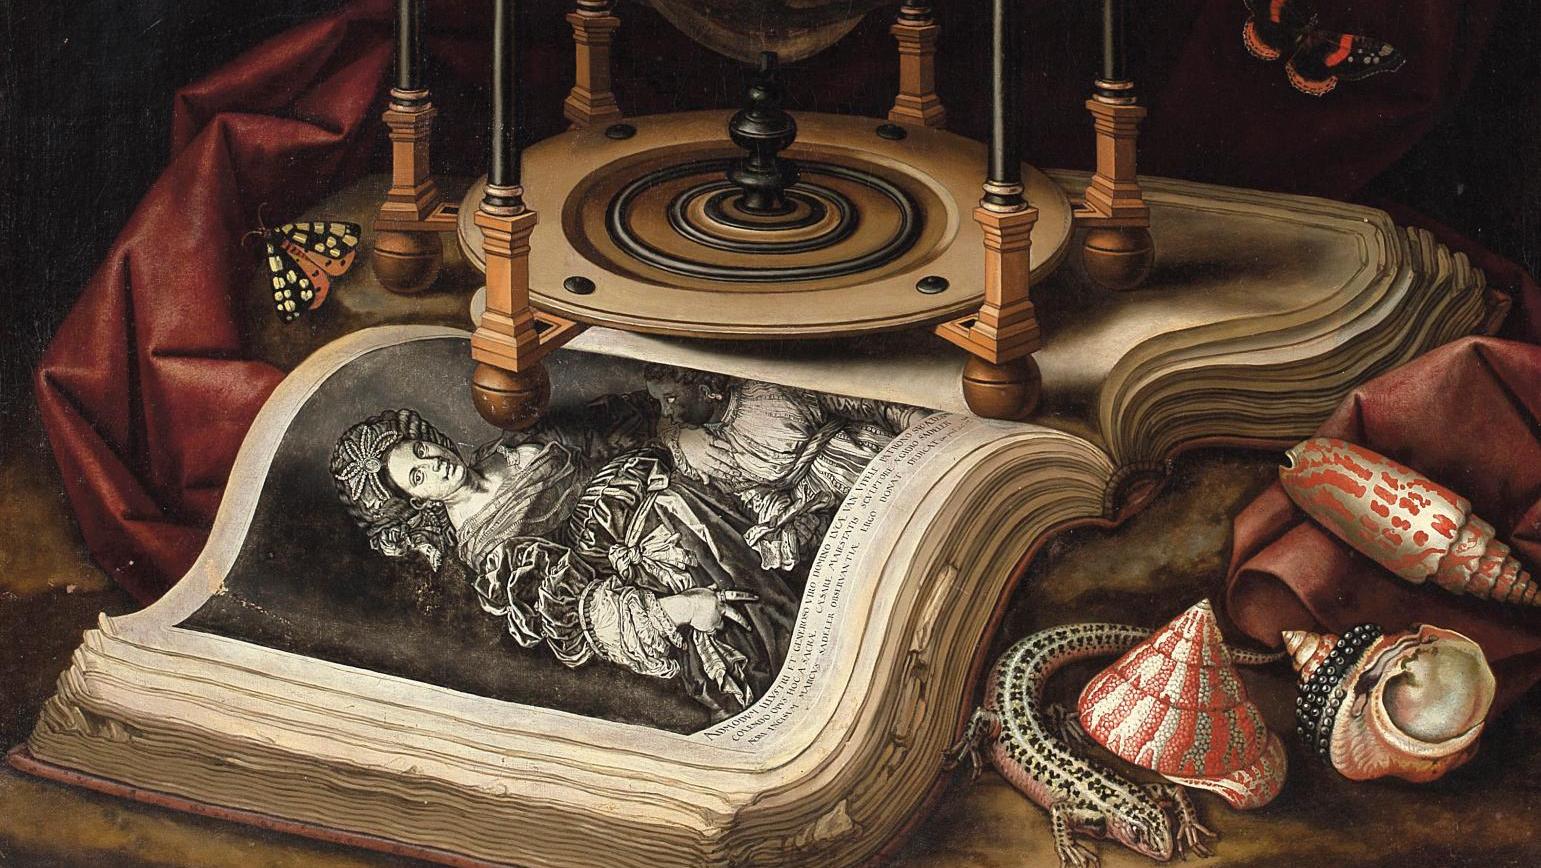 Christian Luyckx (1623-1657), Nature morte au globe céleste, au livre ouvert, coquillages,... Des peintres virtuoses de la matière